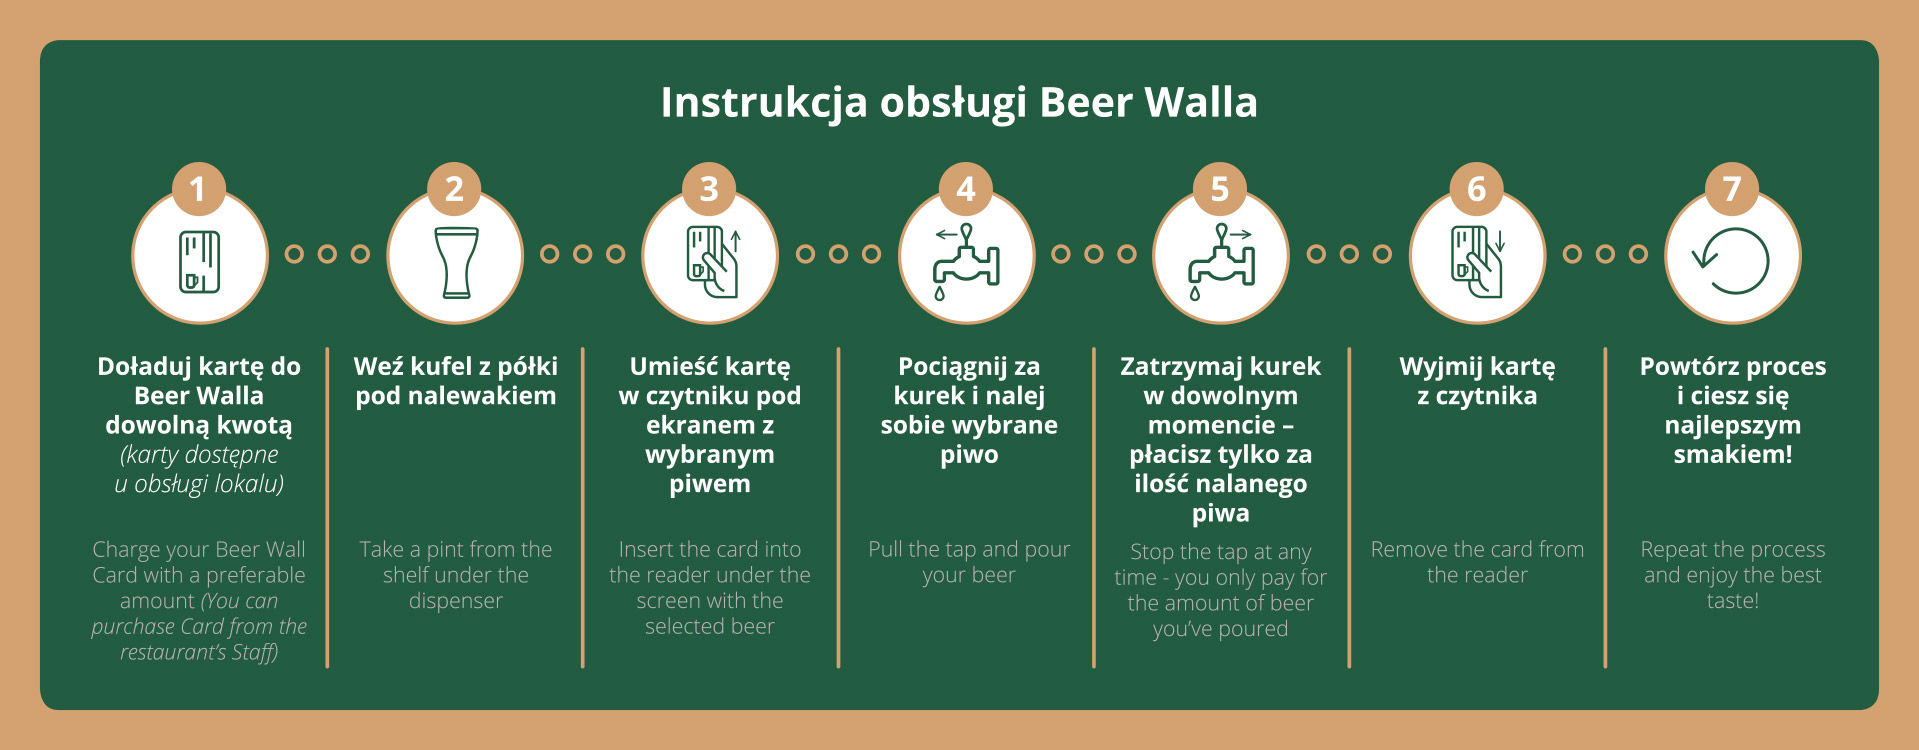 BeerWall - instrukcja obsługi